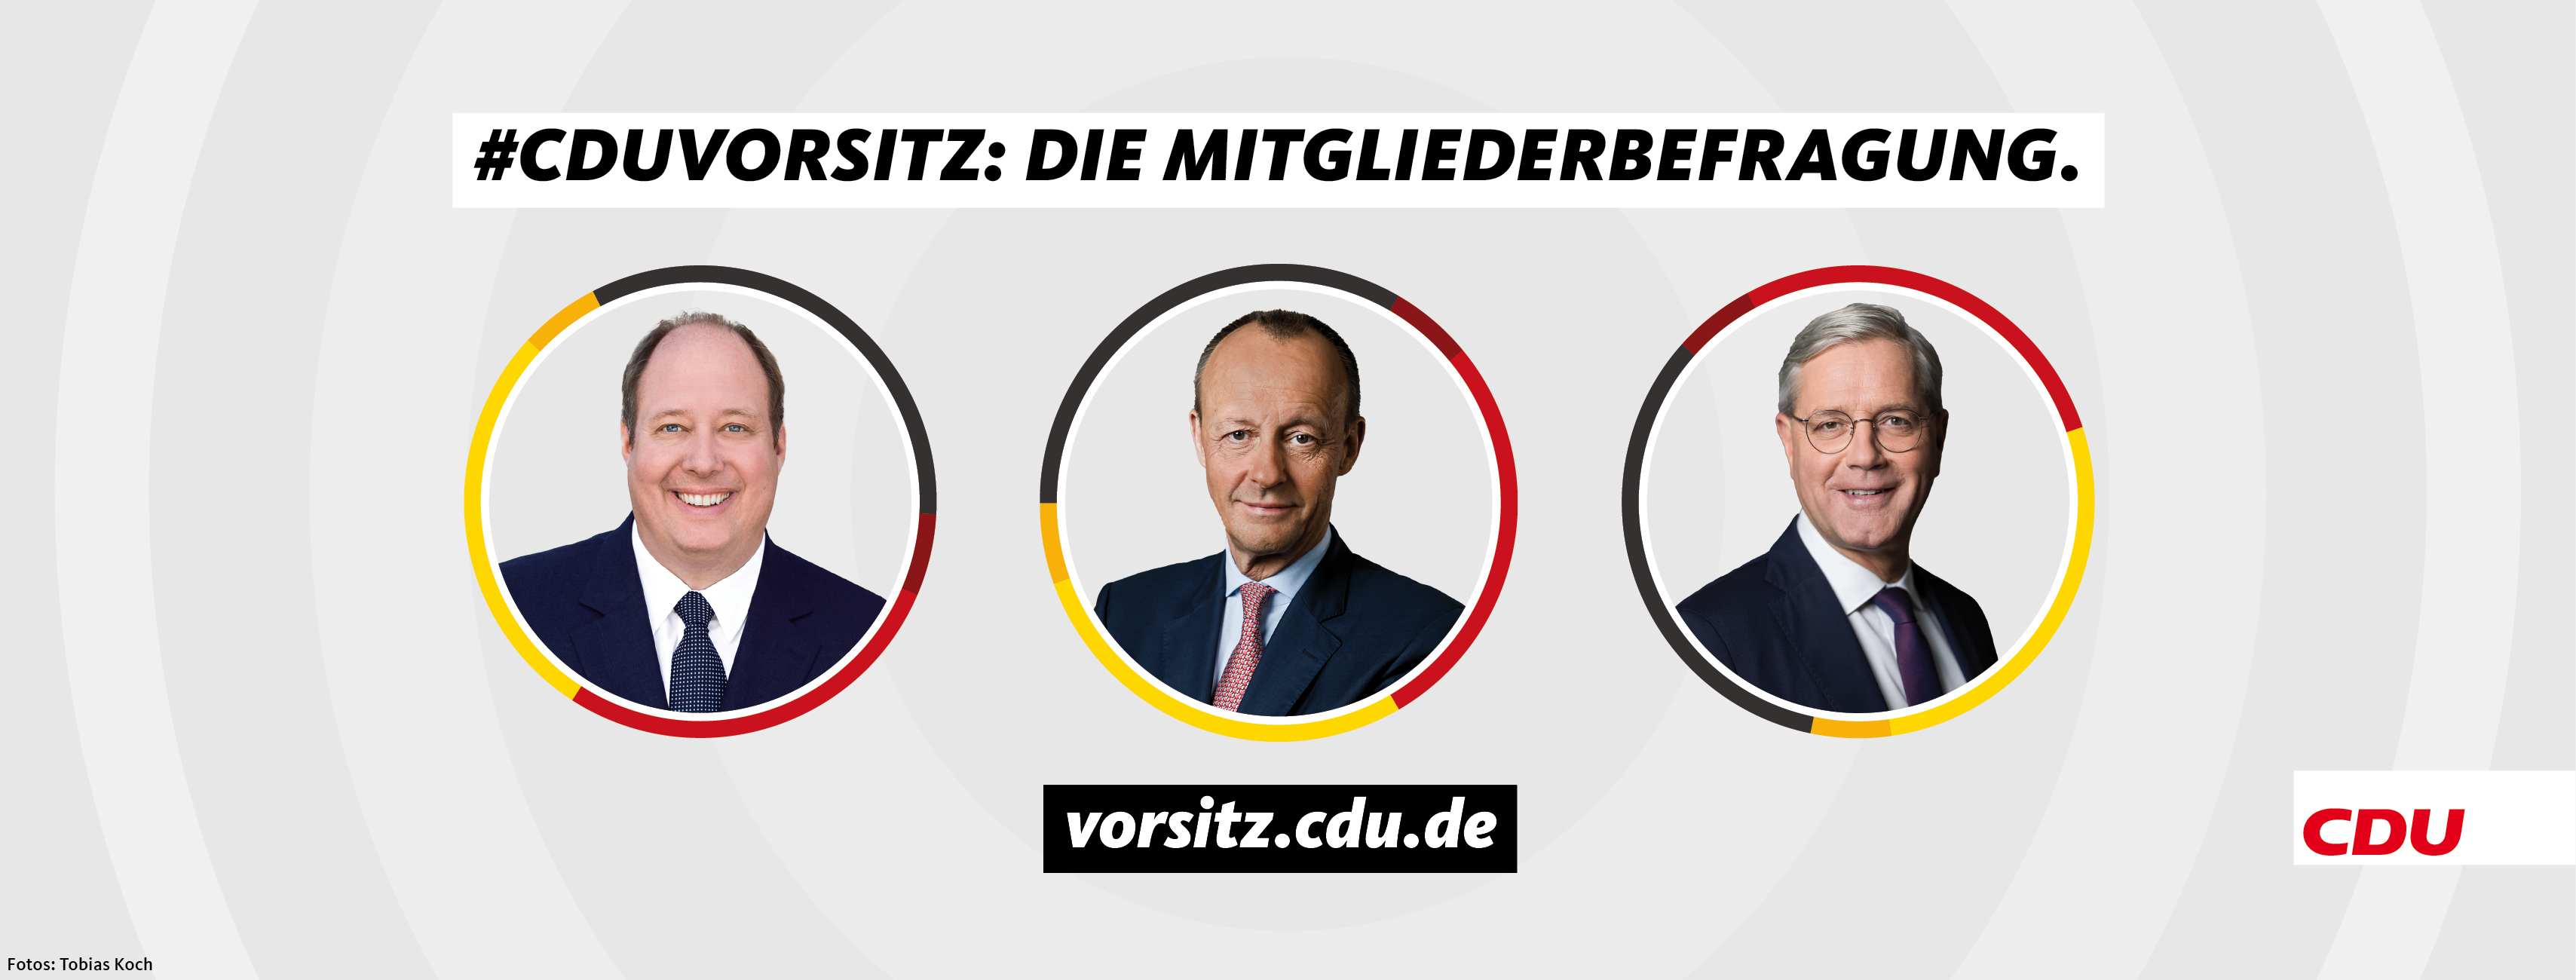 Braun, Merz, Röttgen – wer wird CDU-Chef?